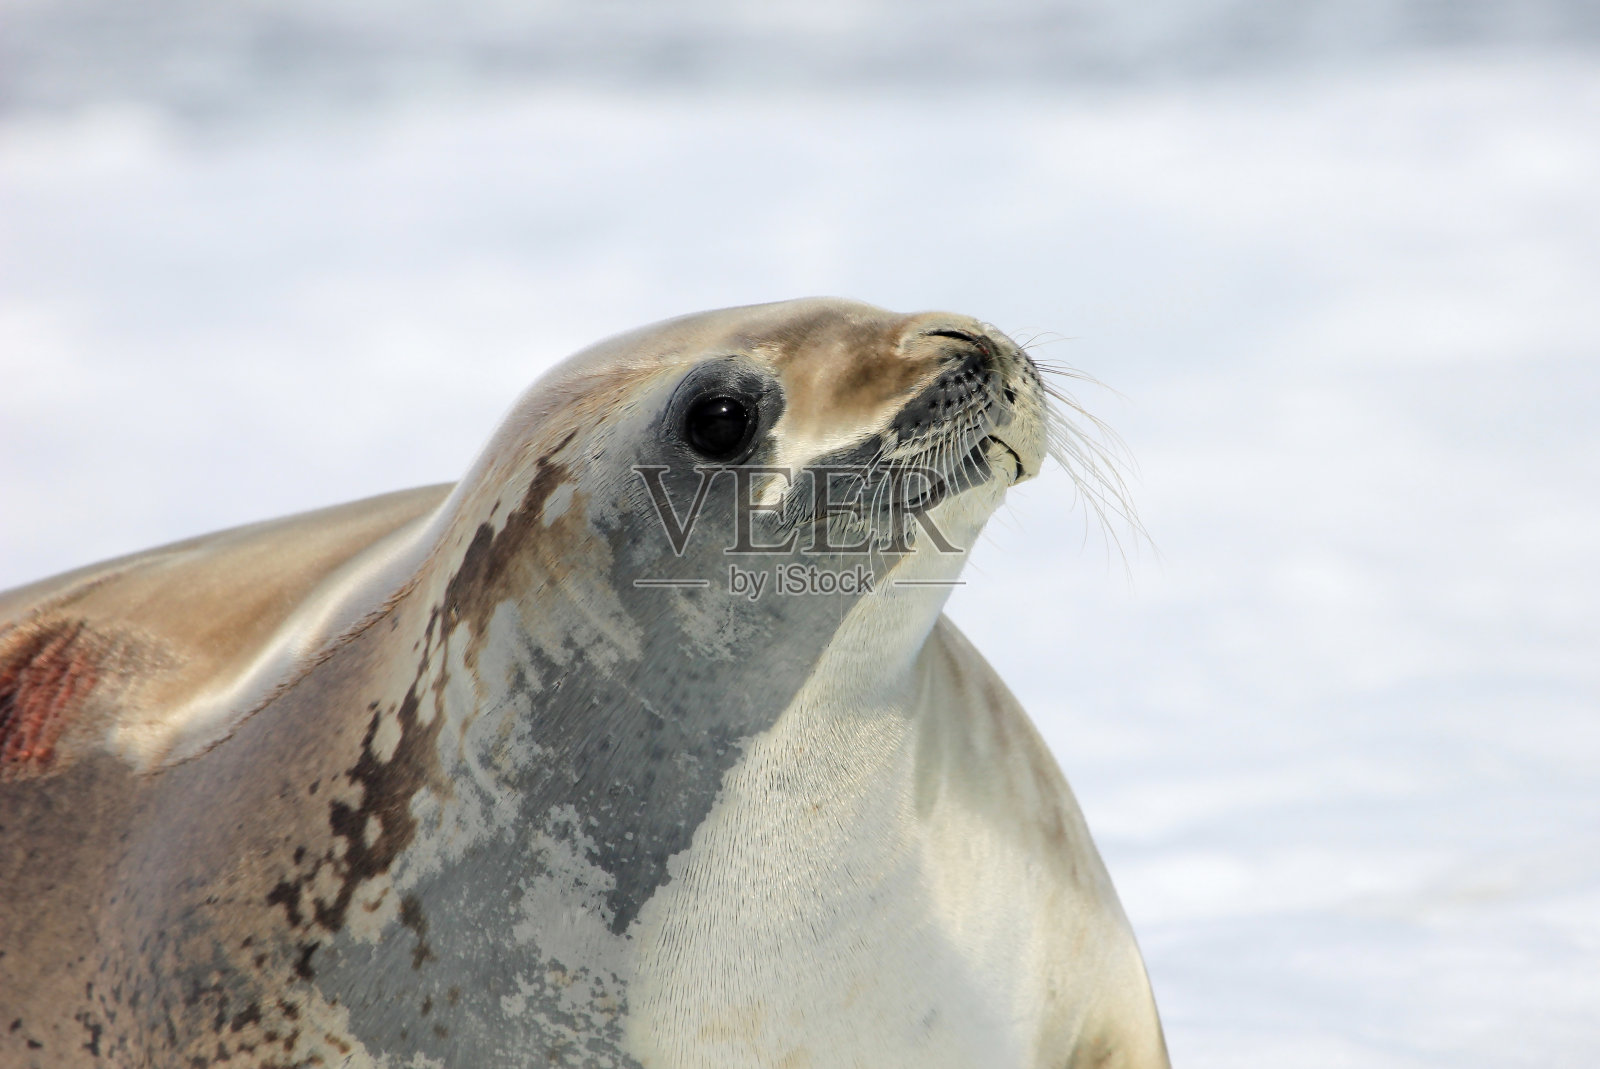 南极半岛浮冰上的食蟹海豹照片摄影图片